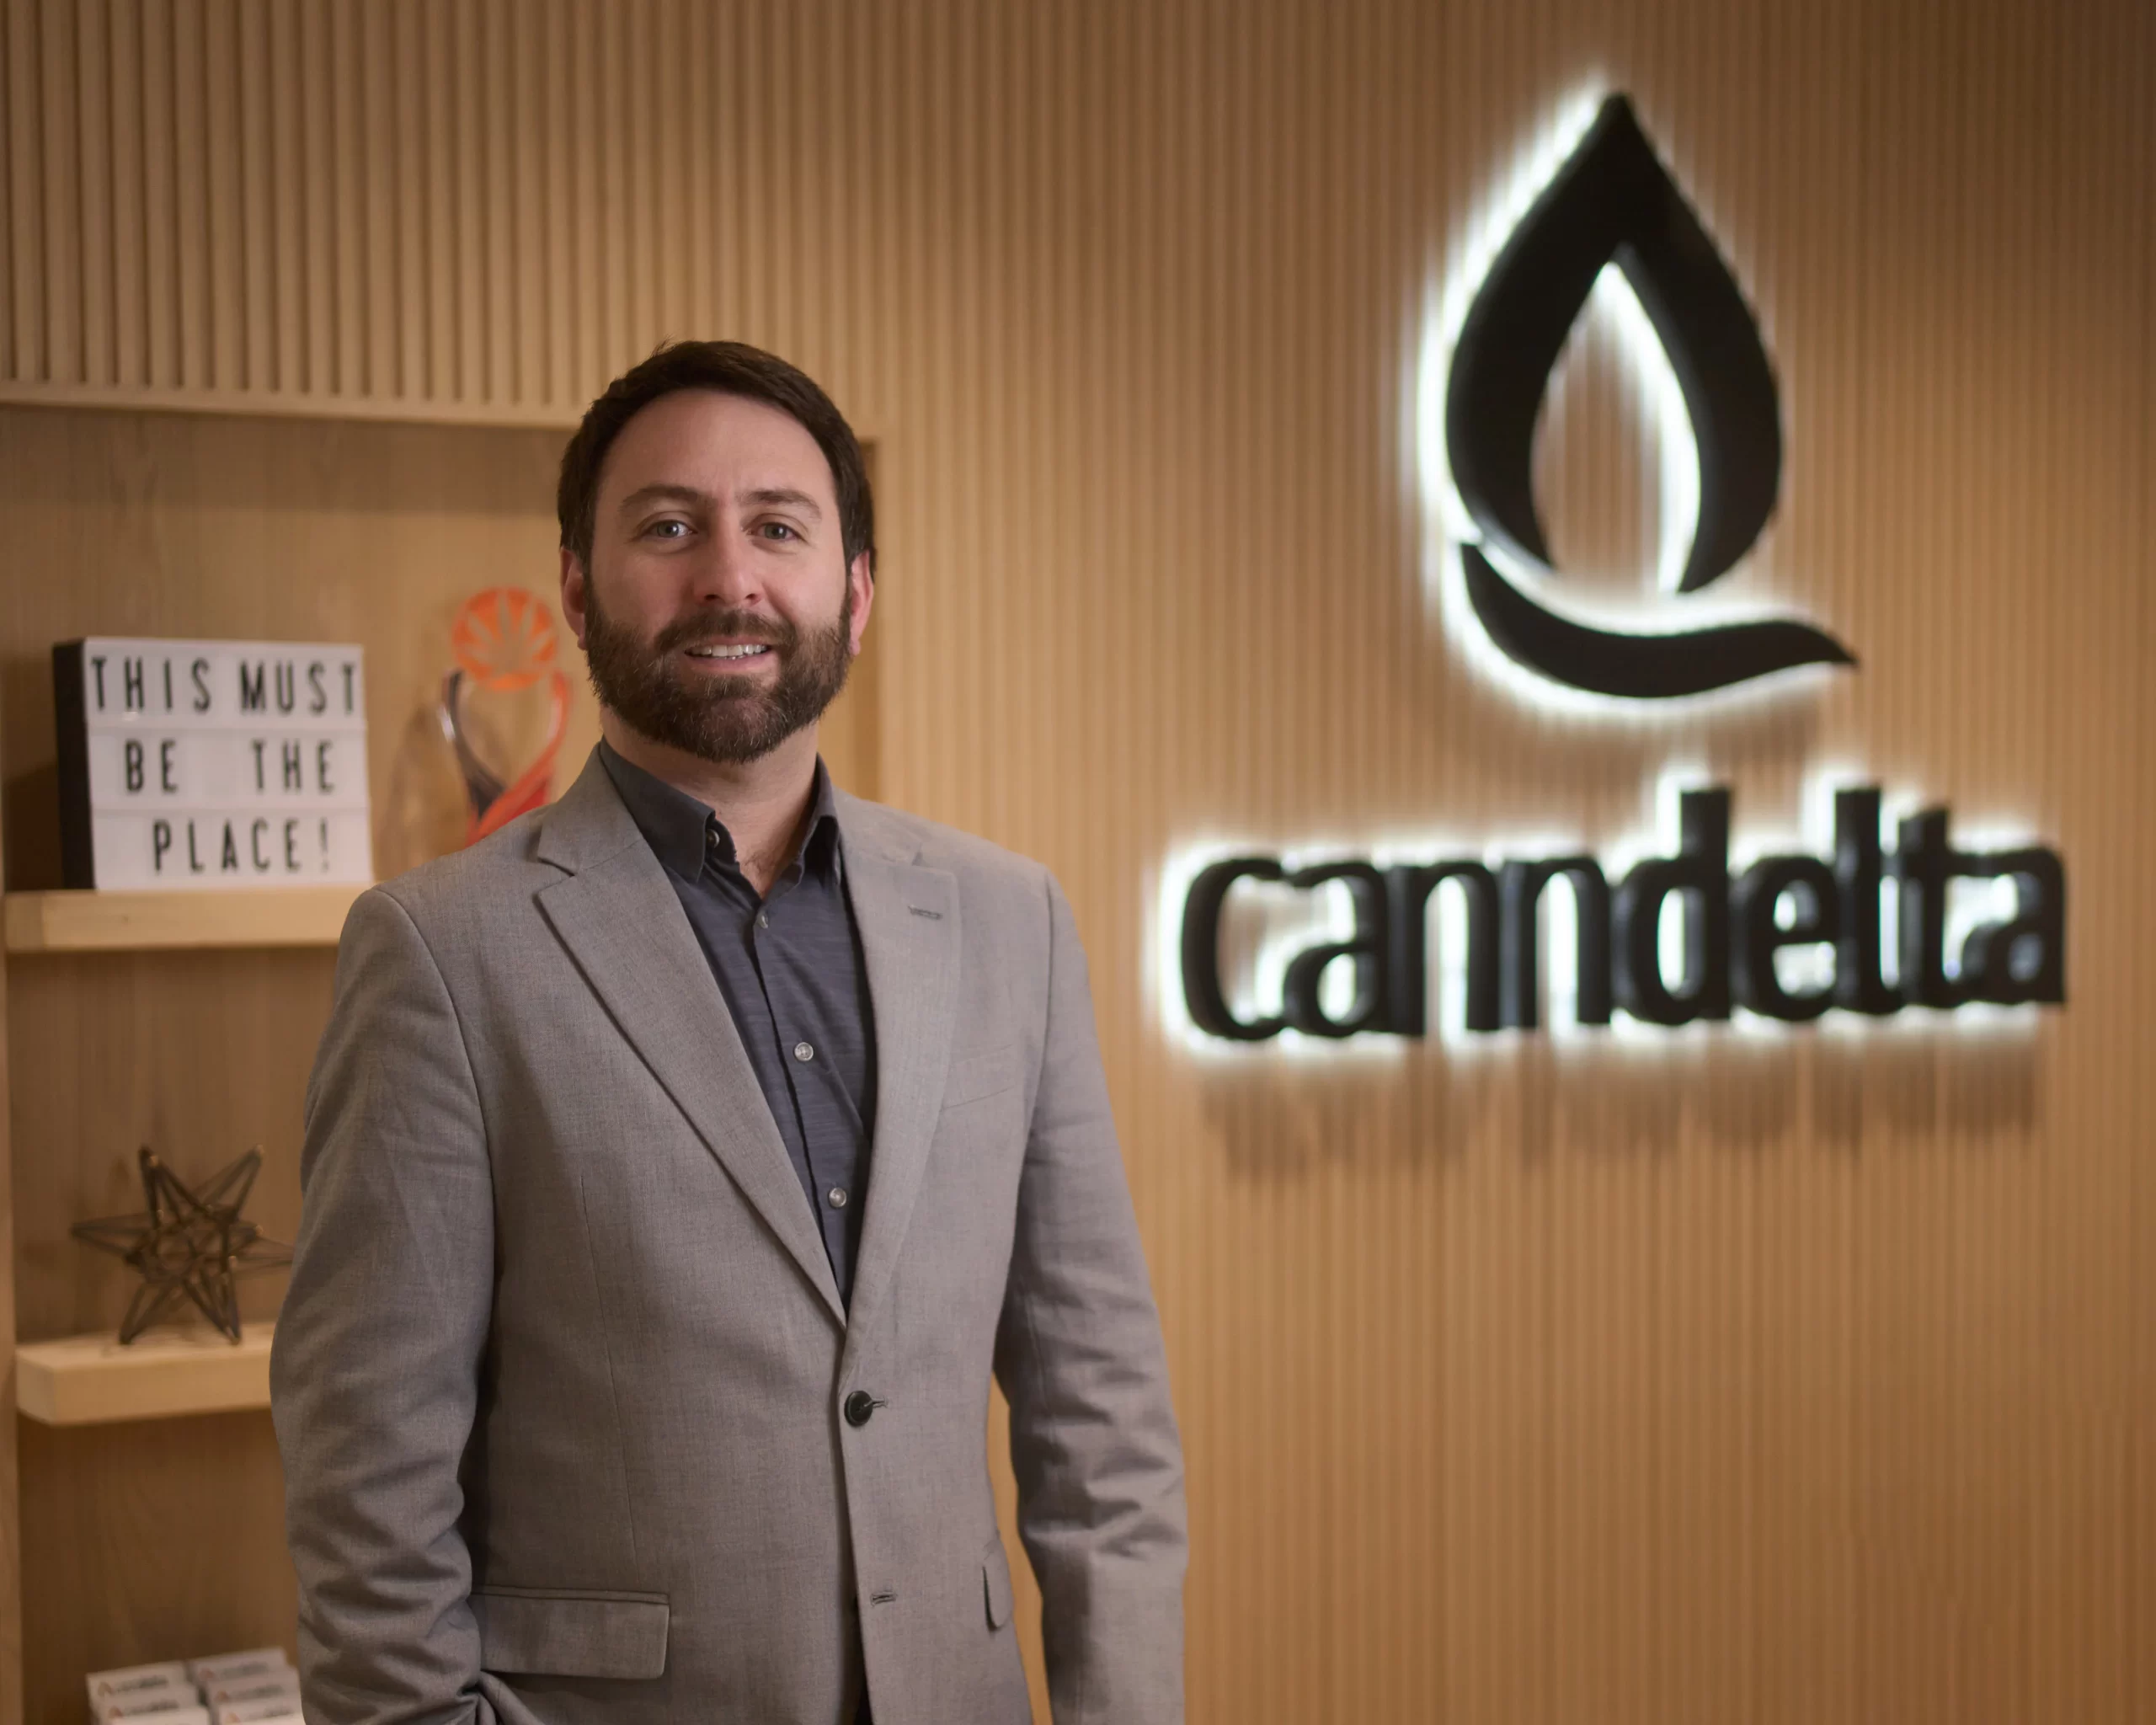 Sebastian Barros at CannDelta with Logo of the company